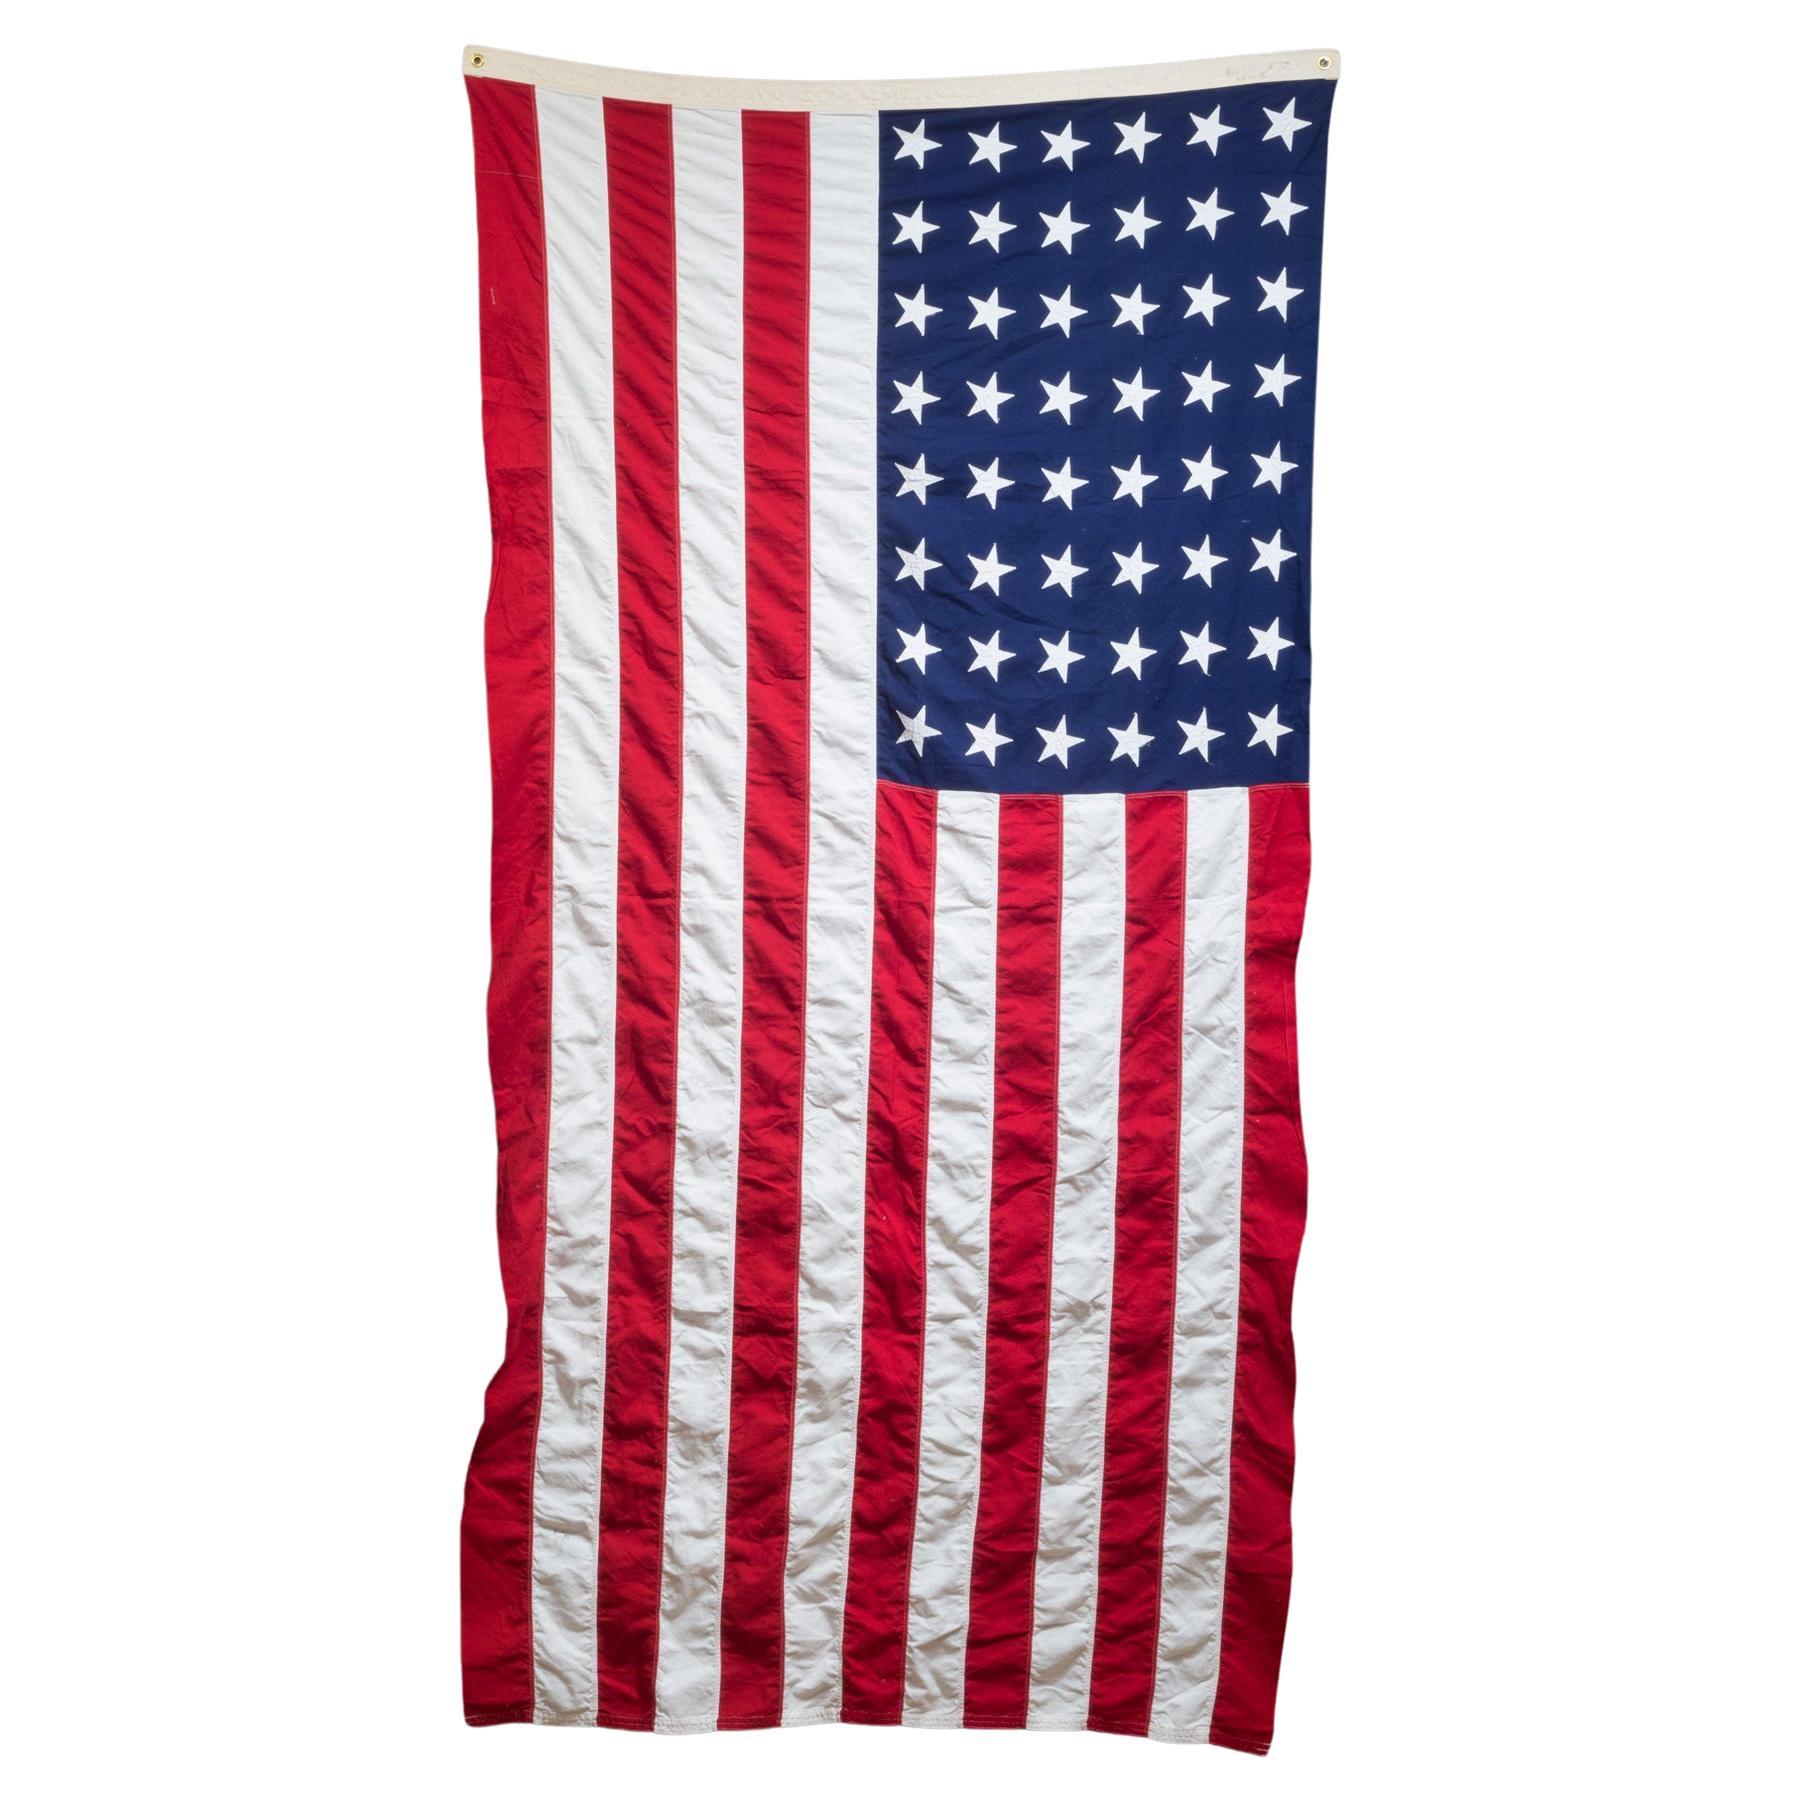 Frühes 20. Jh. Monumentale amerikanische Flagge mit 48 Sternen, ca. 1940-1950